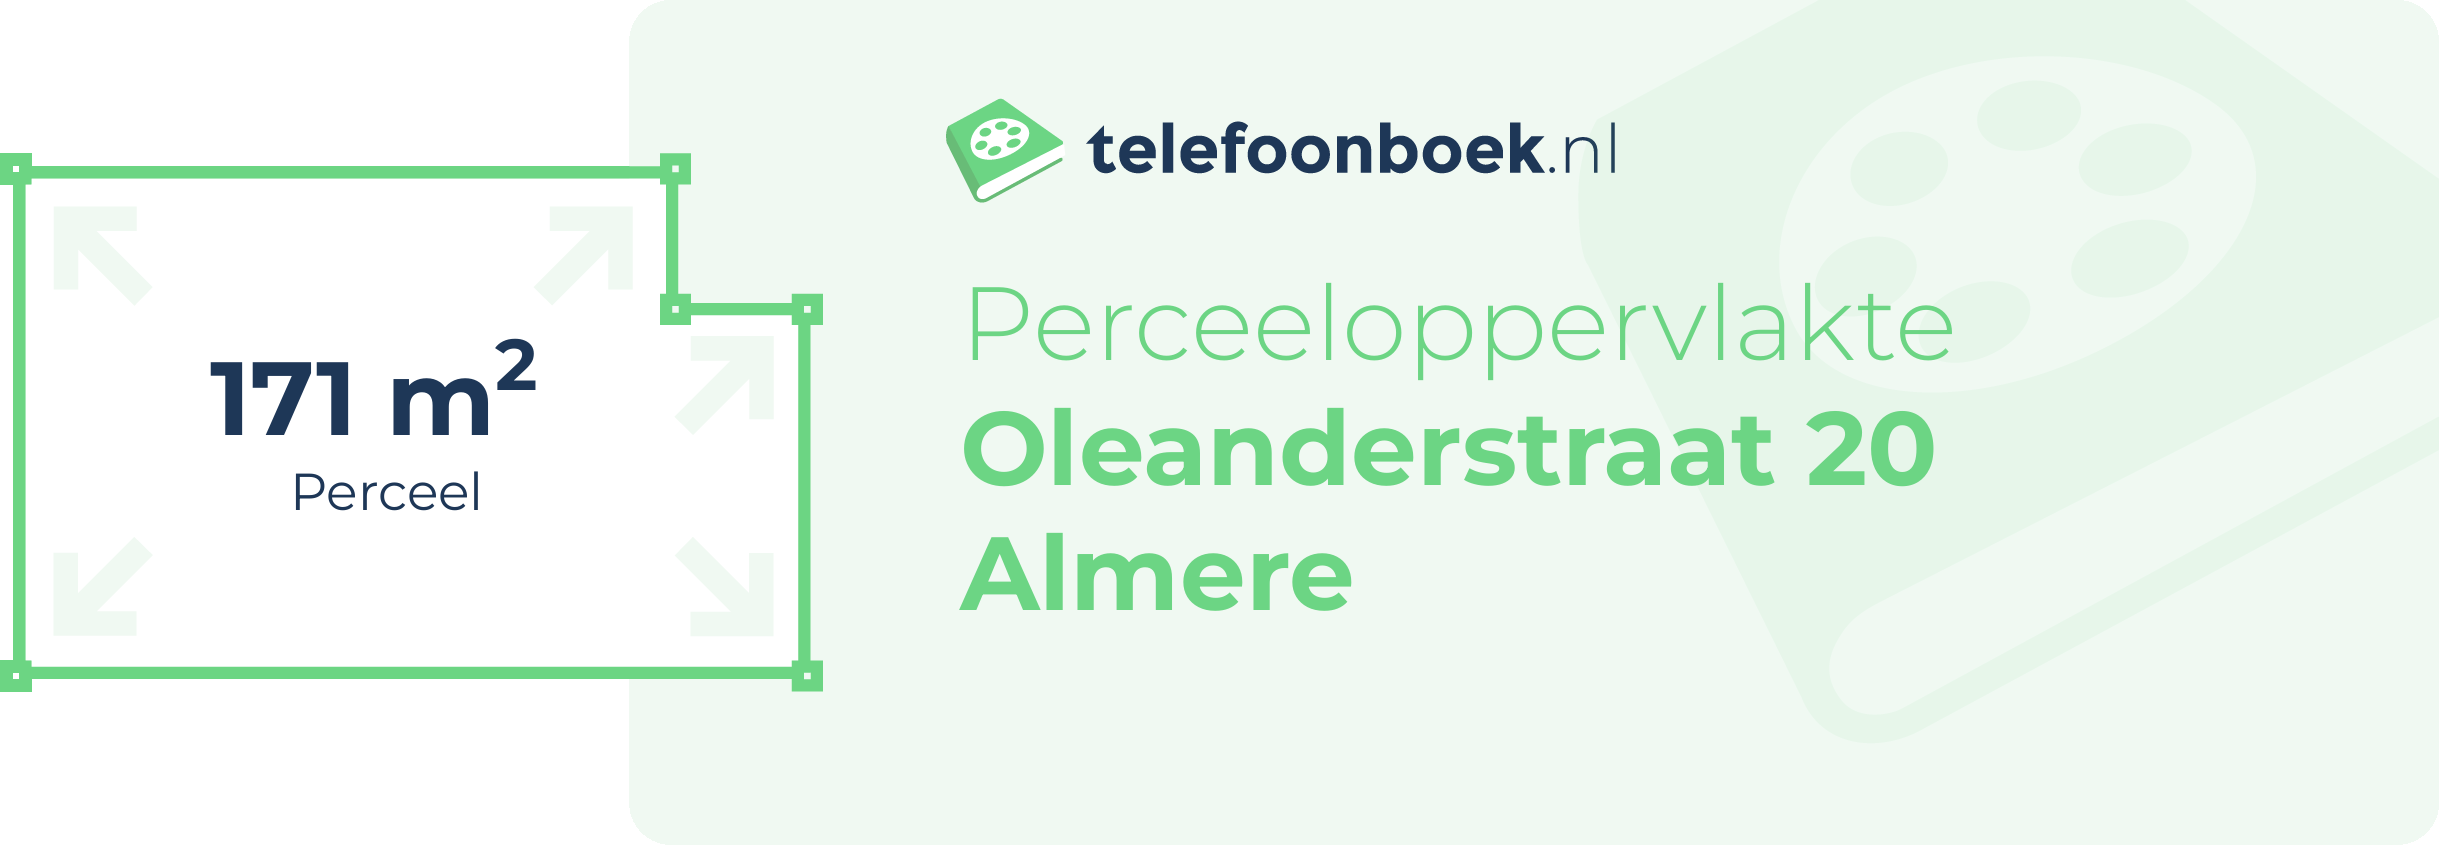 Perceeloppervlakte Oleanderstraat 20 Almere